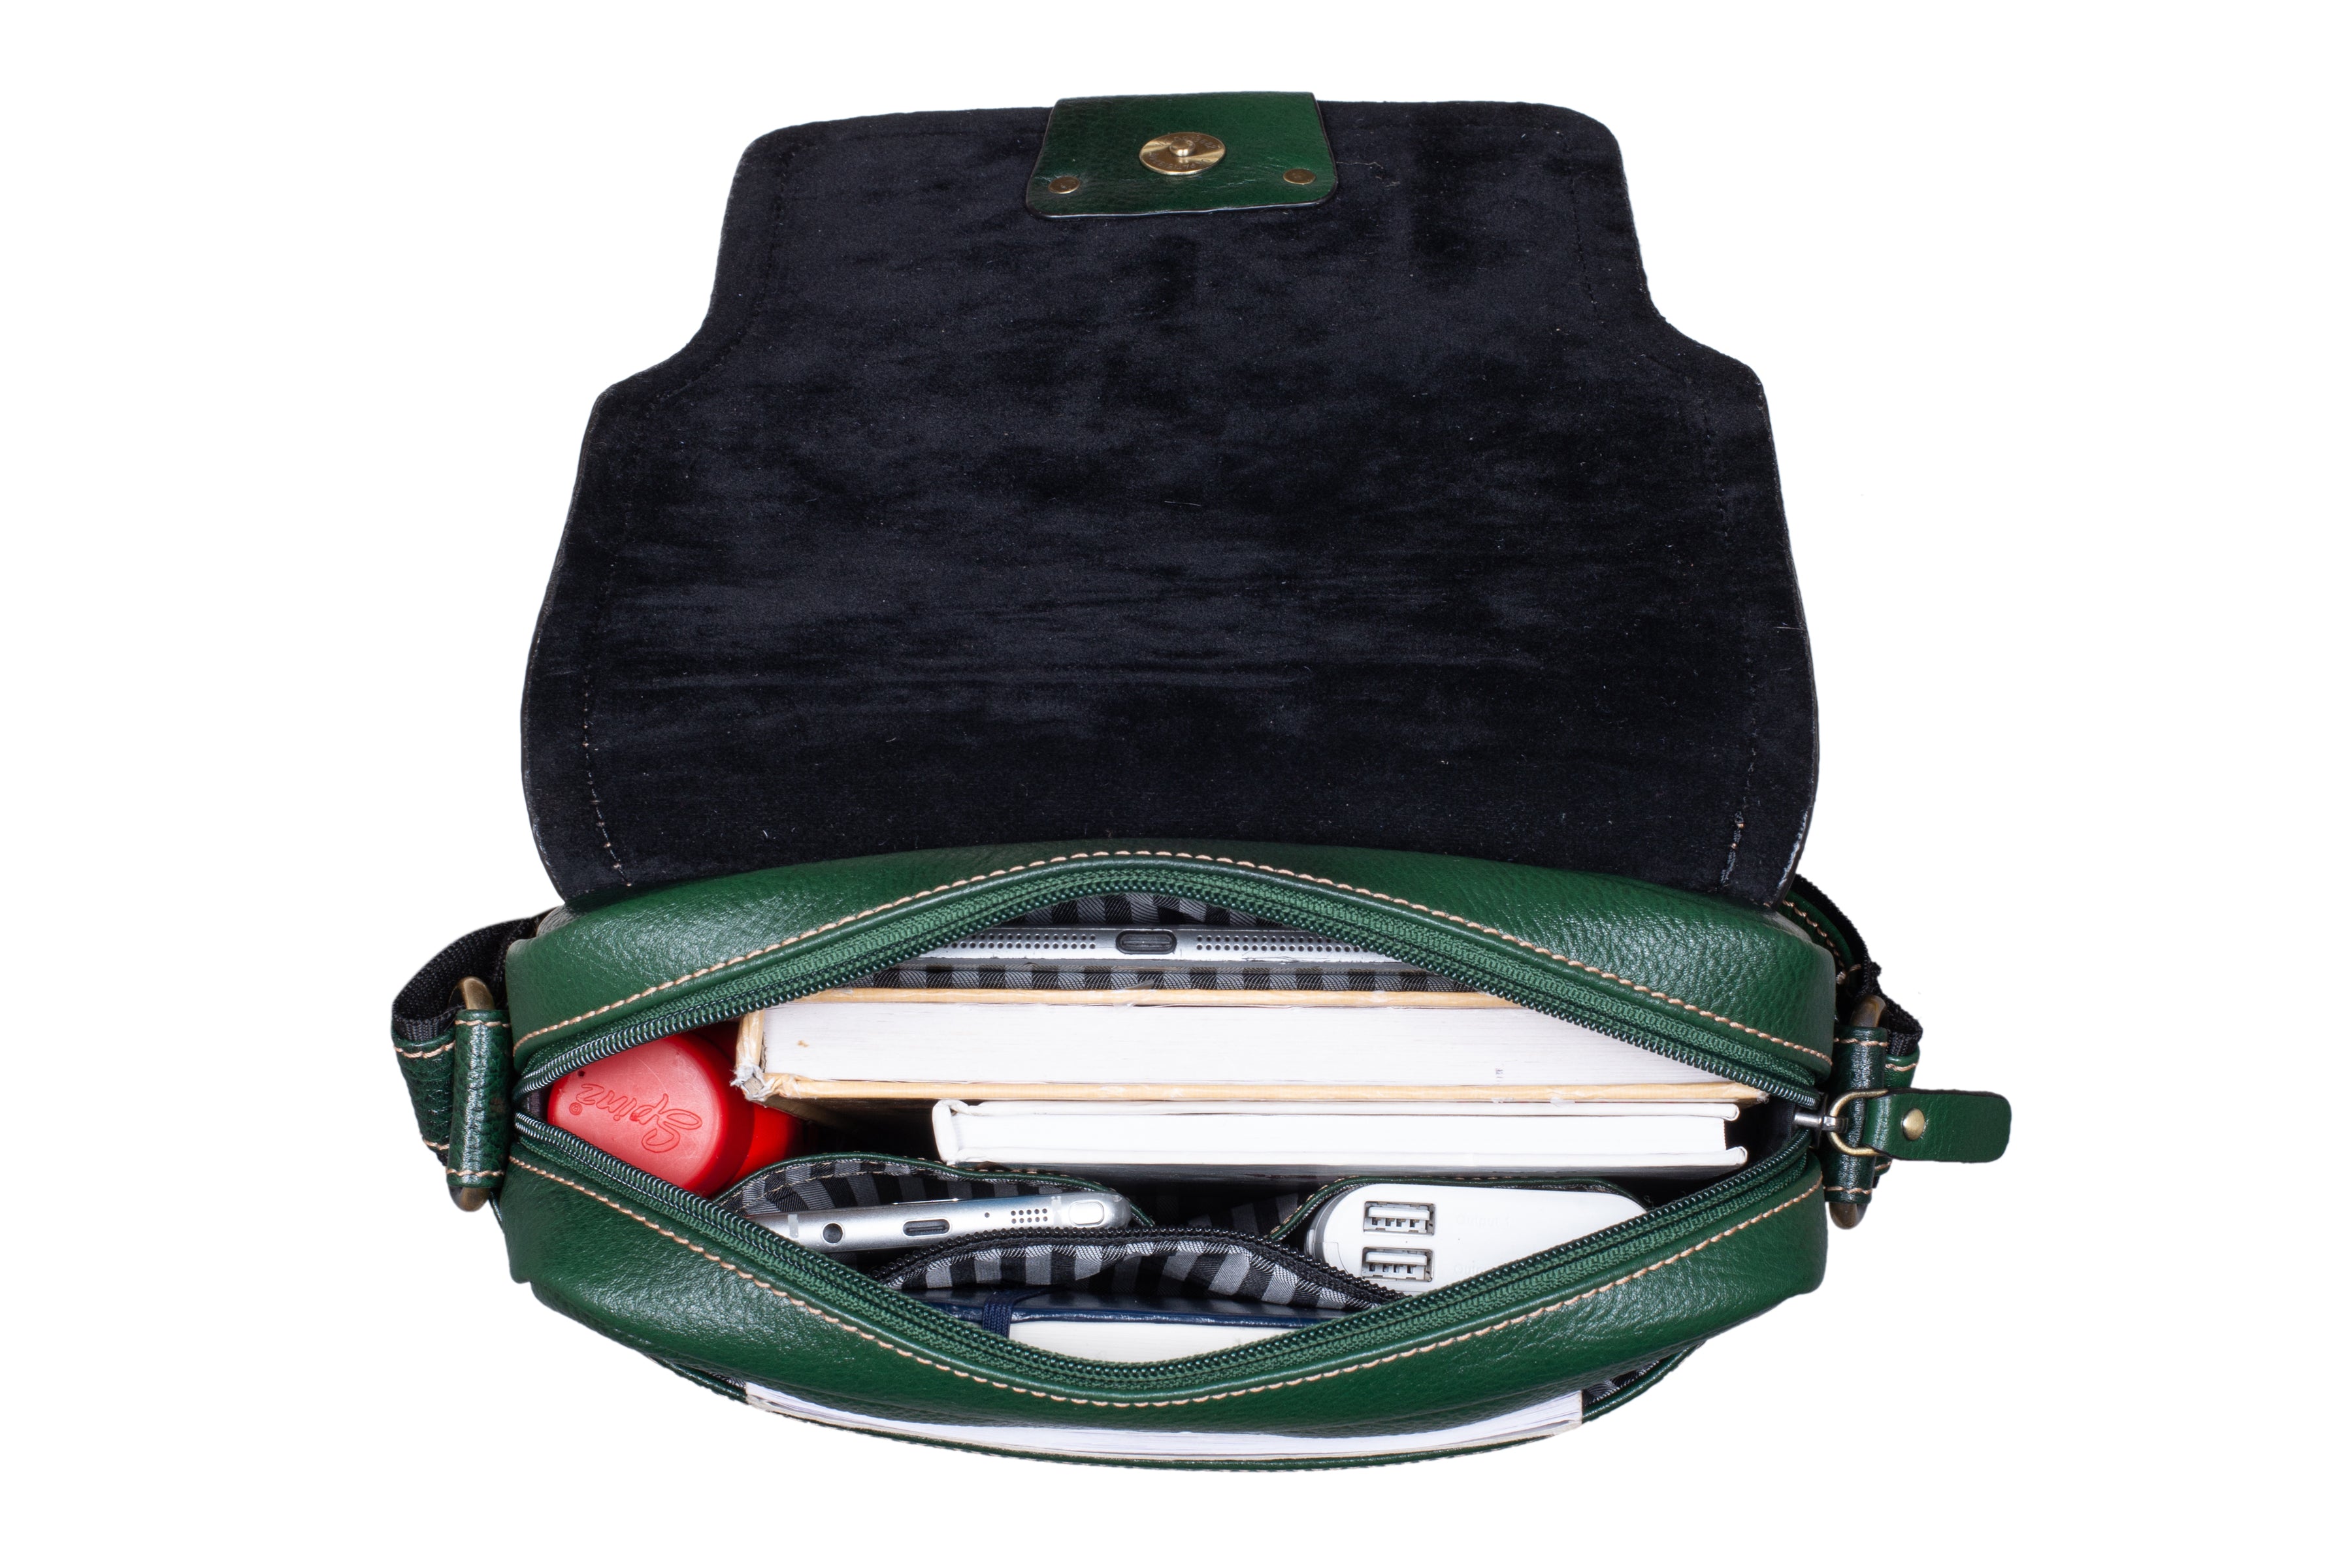 JEM Black Bifold Wallet | Women's Handbags – Steve Madden